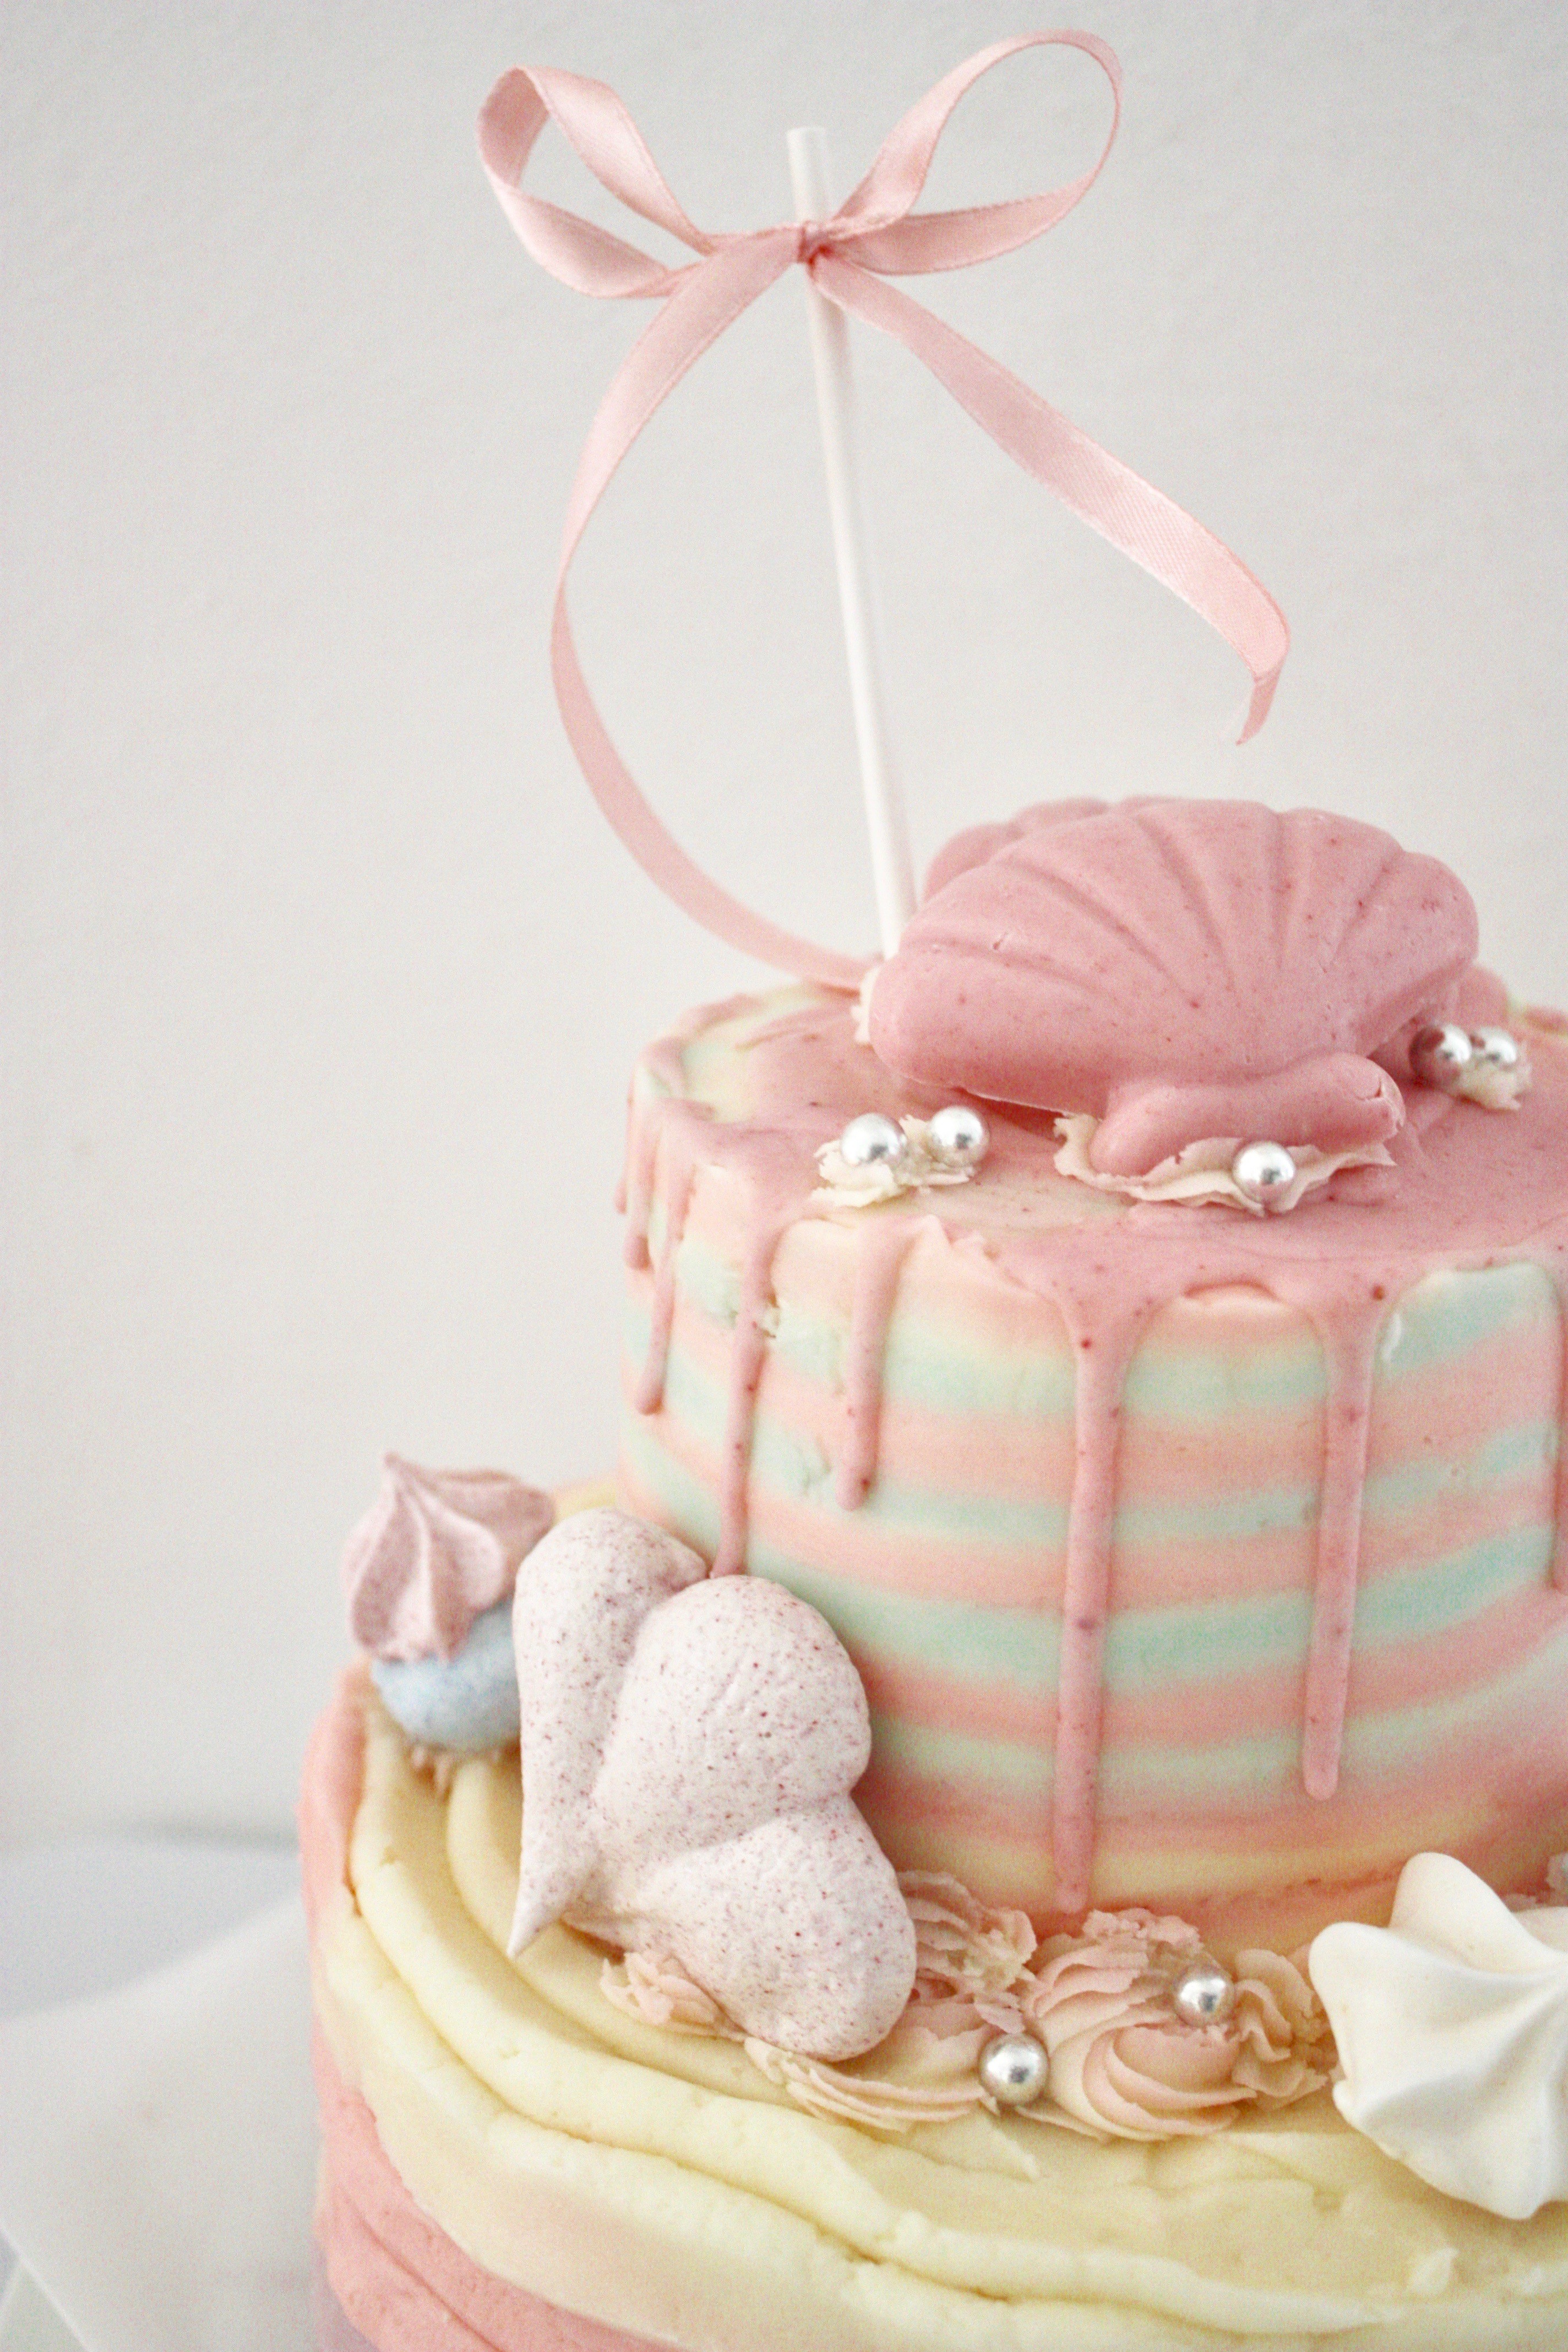 マーメイドのケーキはいかが パリ風 ママスタイル Blog Madame Figaro Jp フィガロジャポン